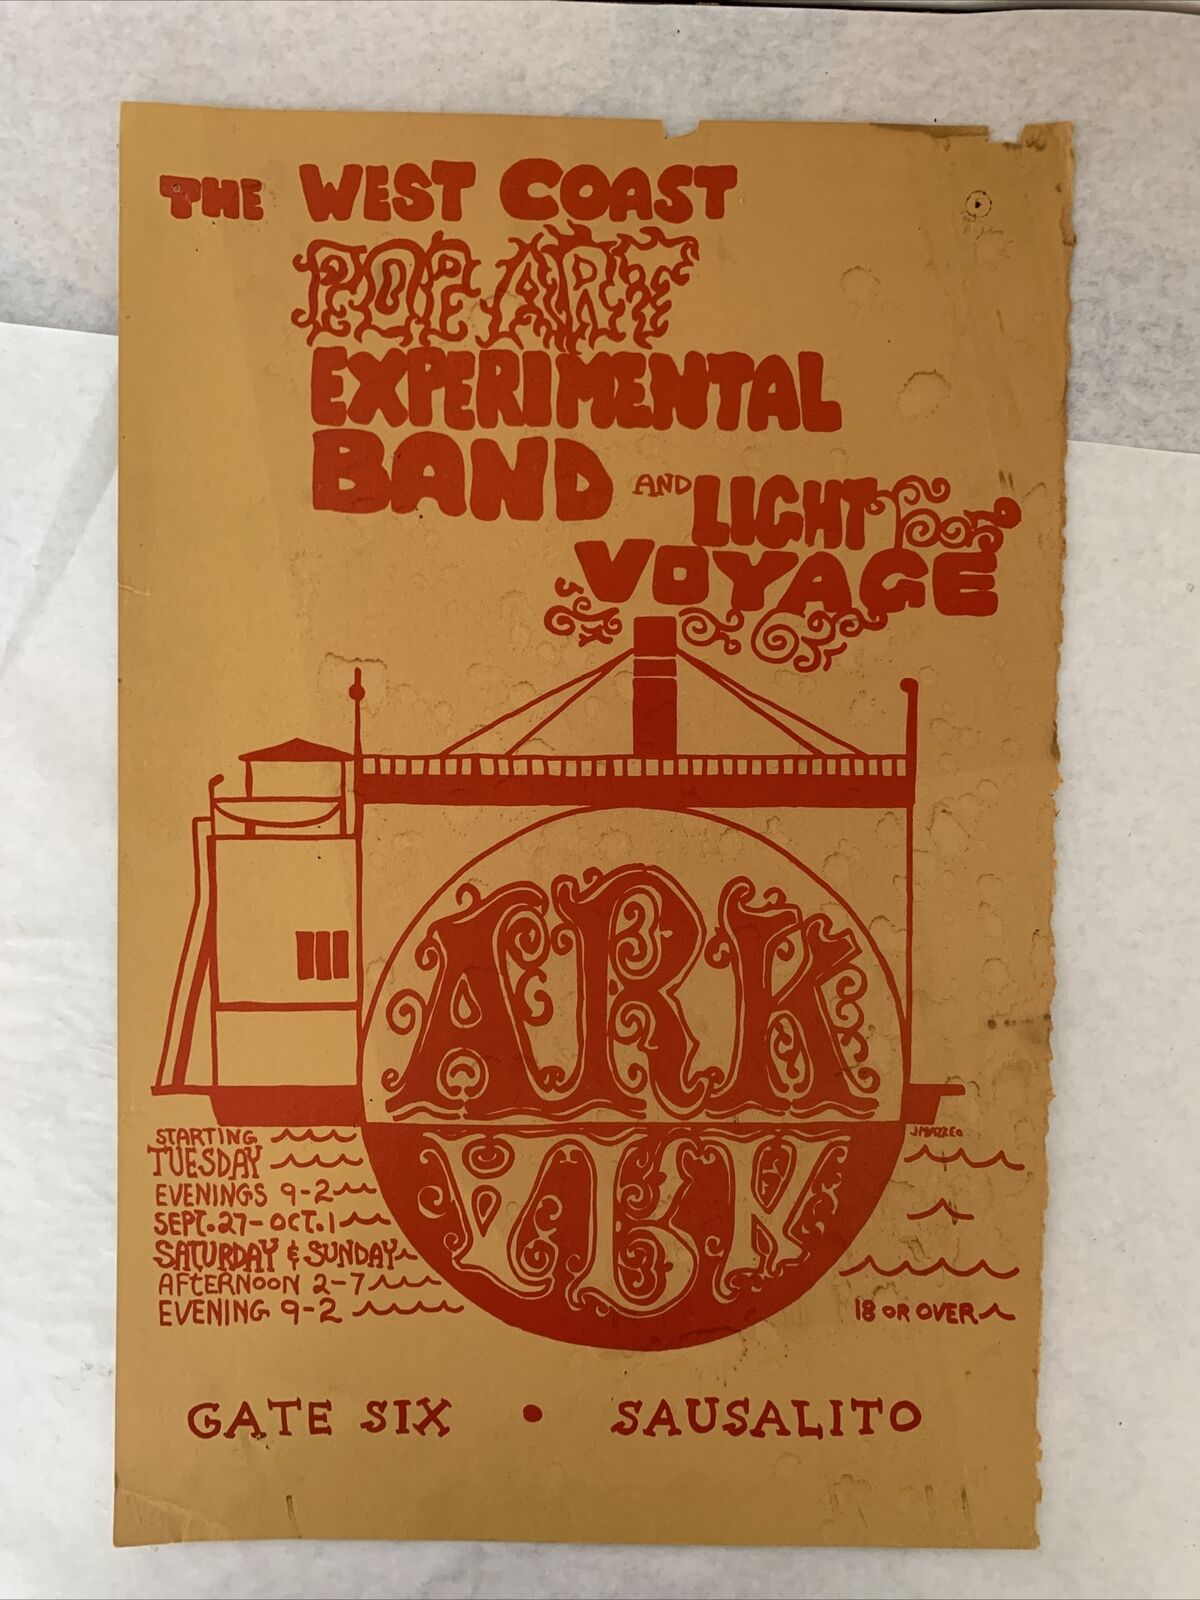 Rare Original 1967 West Coast Pop Art Experimental Band The Ark Sausalito Poster